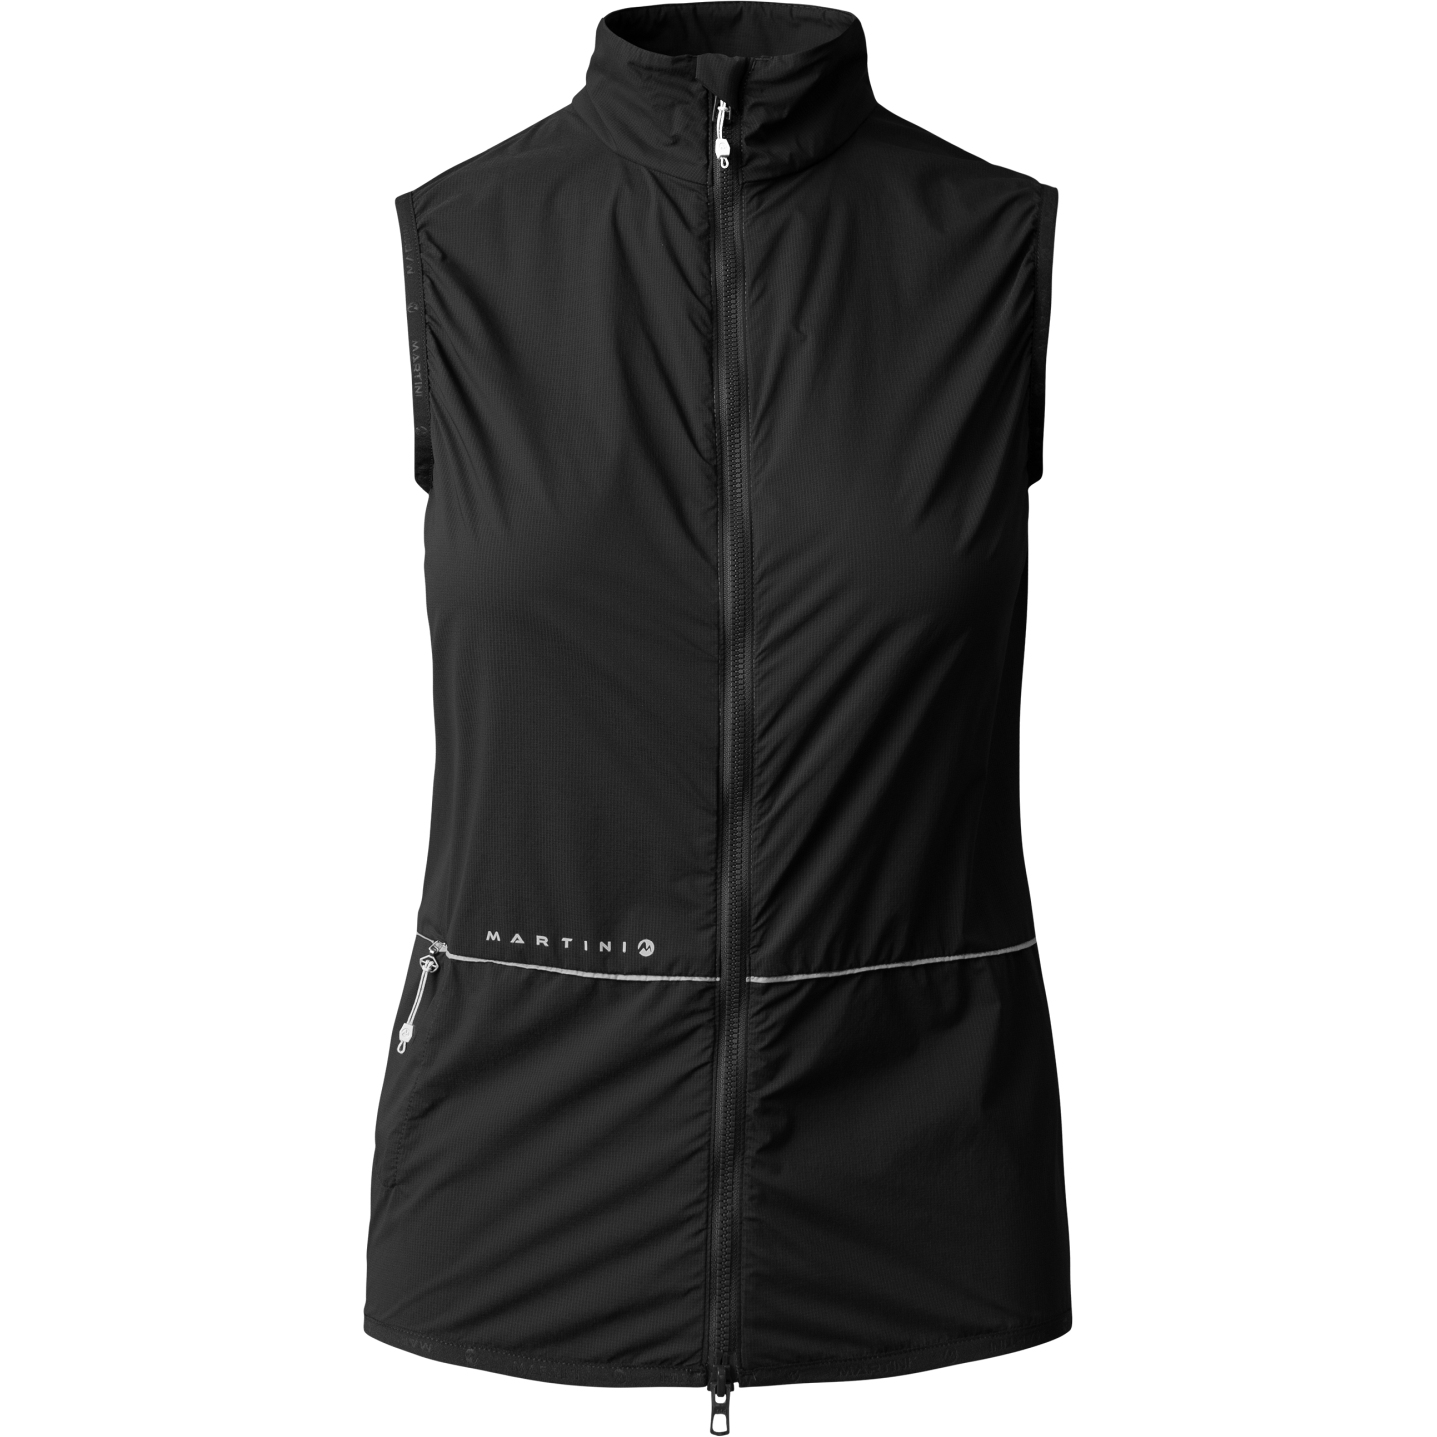 Produktbild von Martini Sportswear Flowtrail Weste Damen - schwarz/schwarz